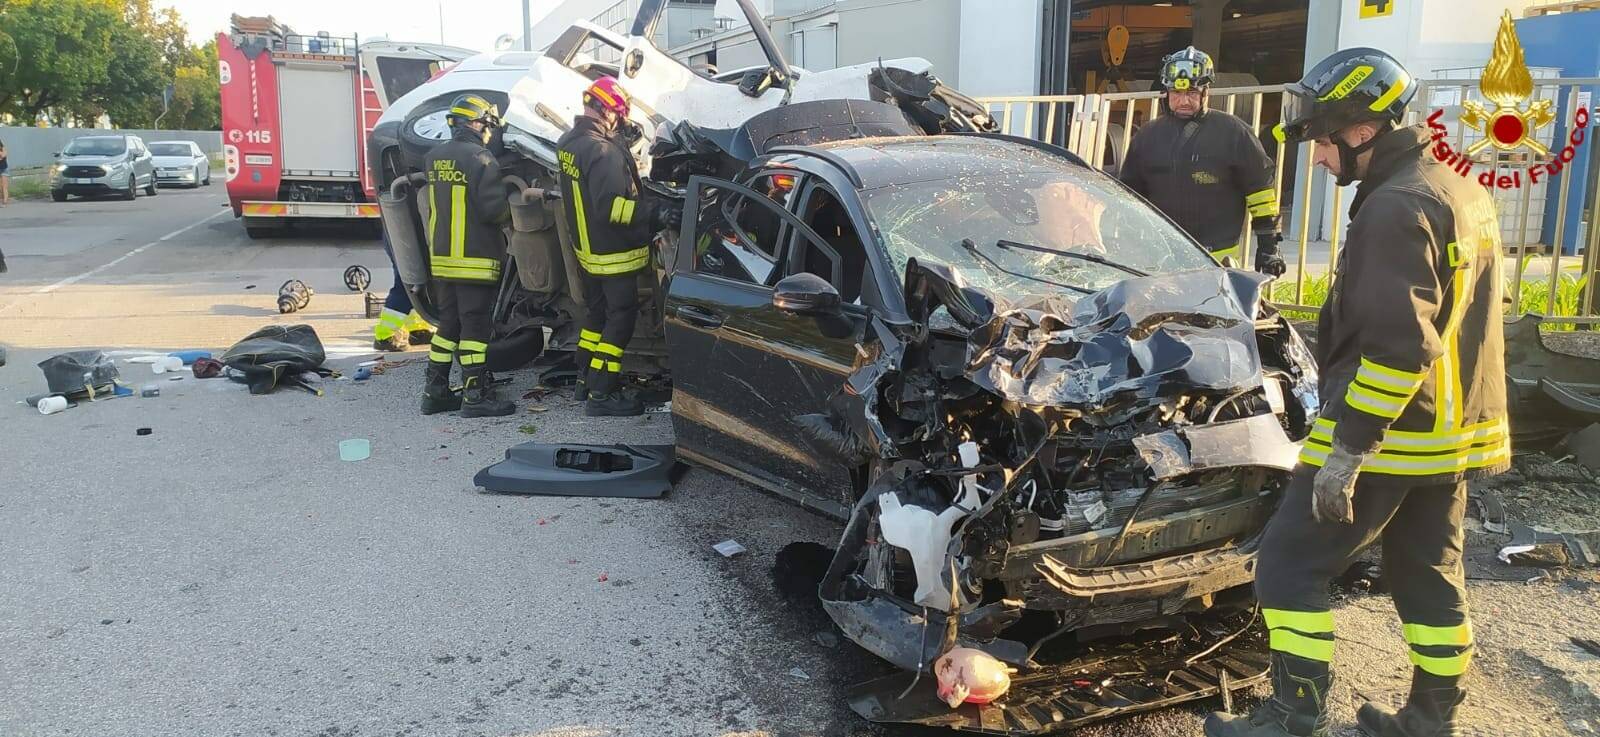 Schianto fra furgone e auto: due feriti gravi